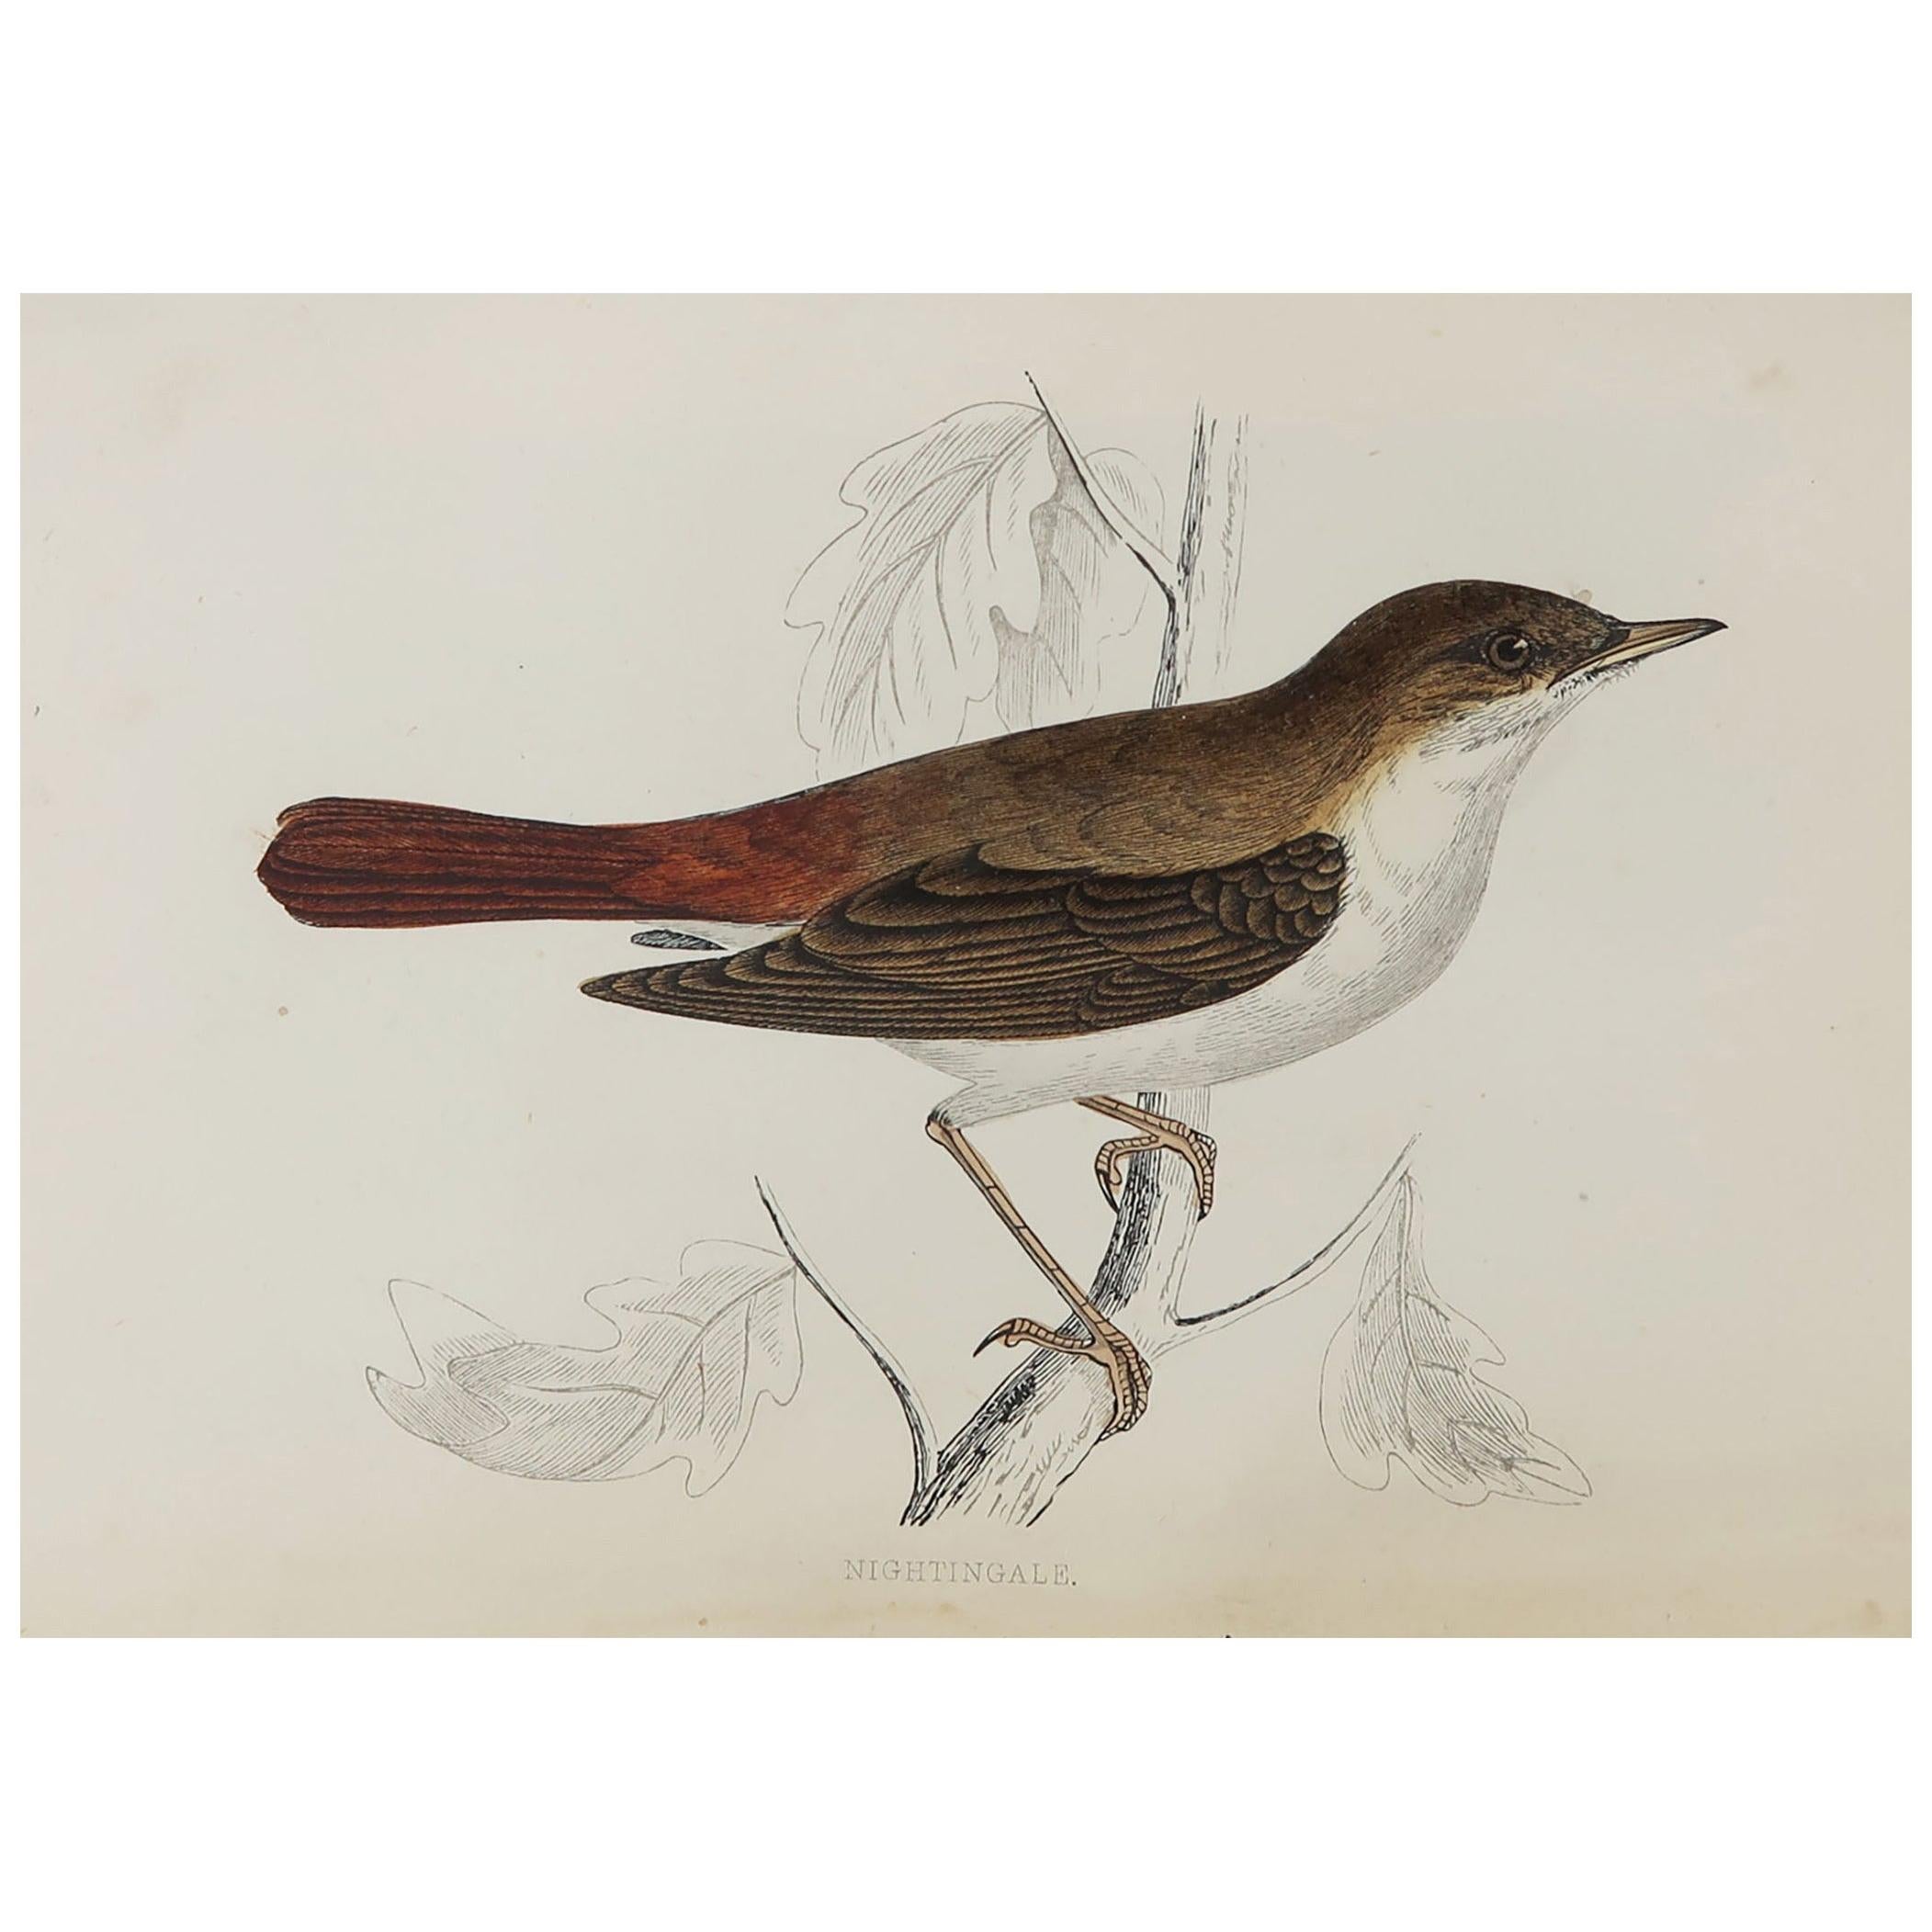 Original Antique Bird Print, the Nightingale, circa 1870